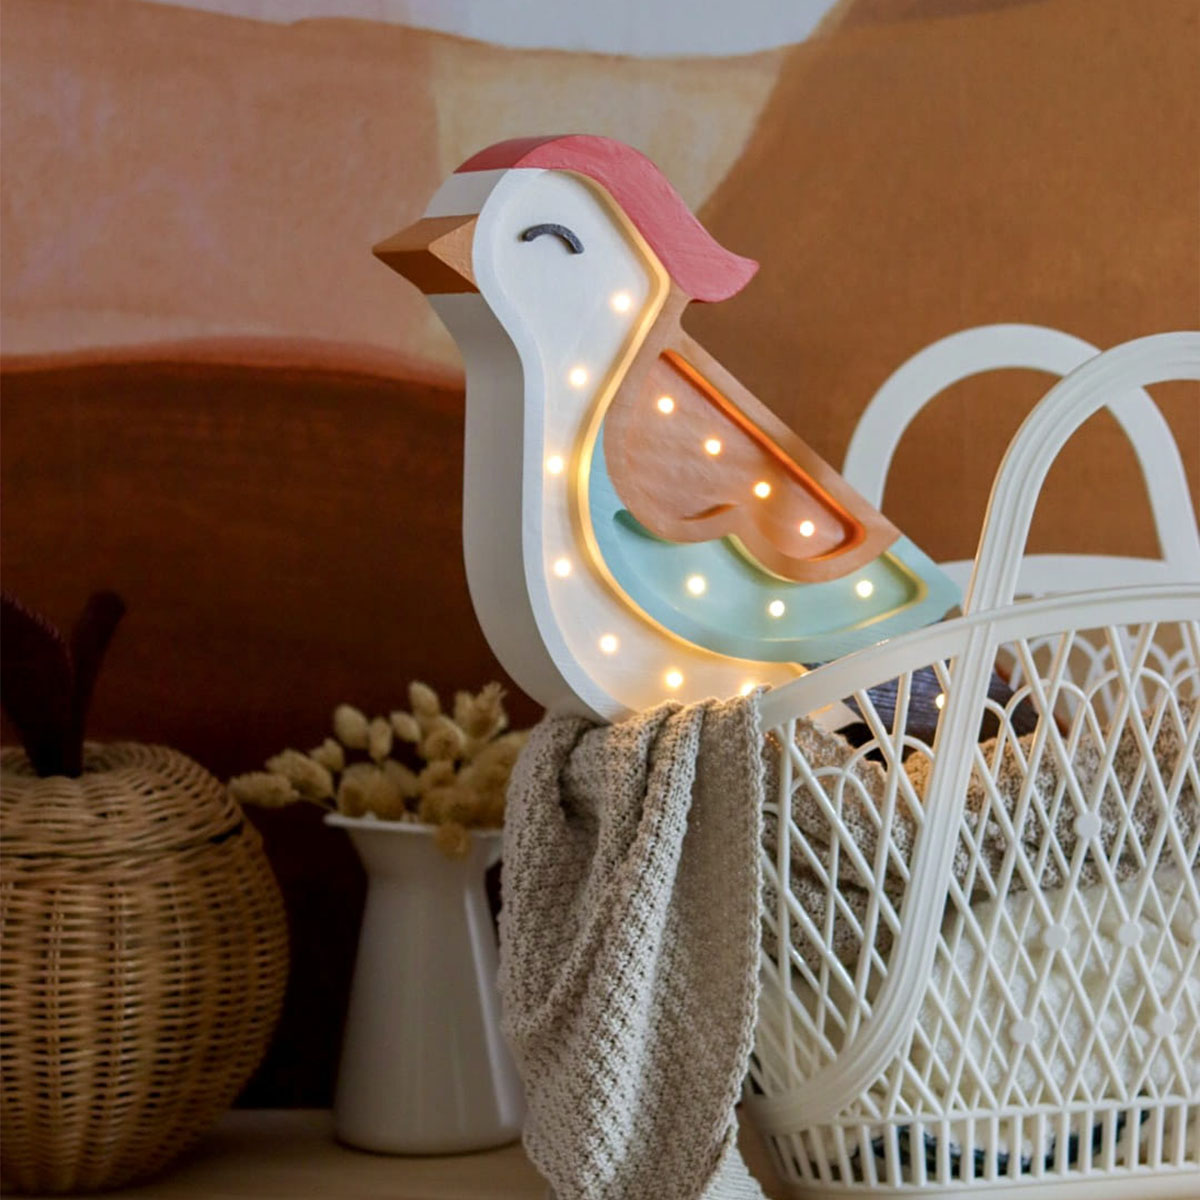 LED Kinderleuchte Vogel aus Holz, orange/ blau, handgemacht